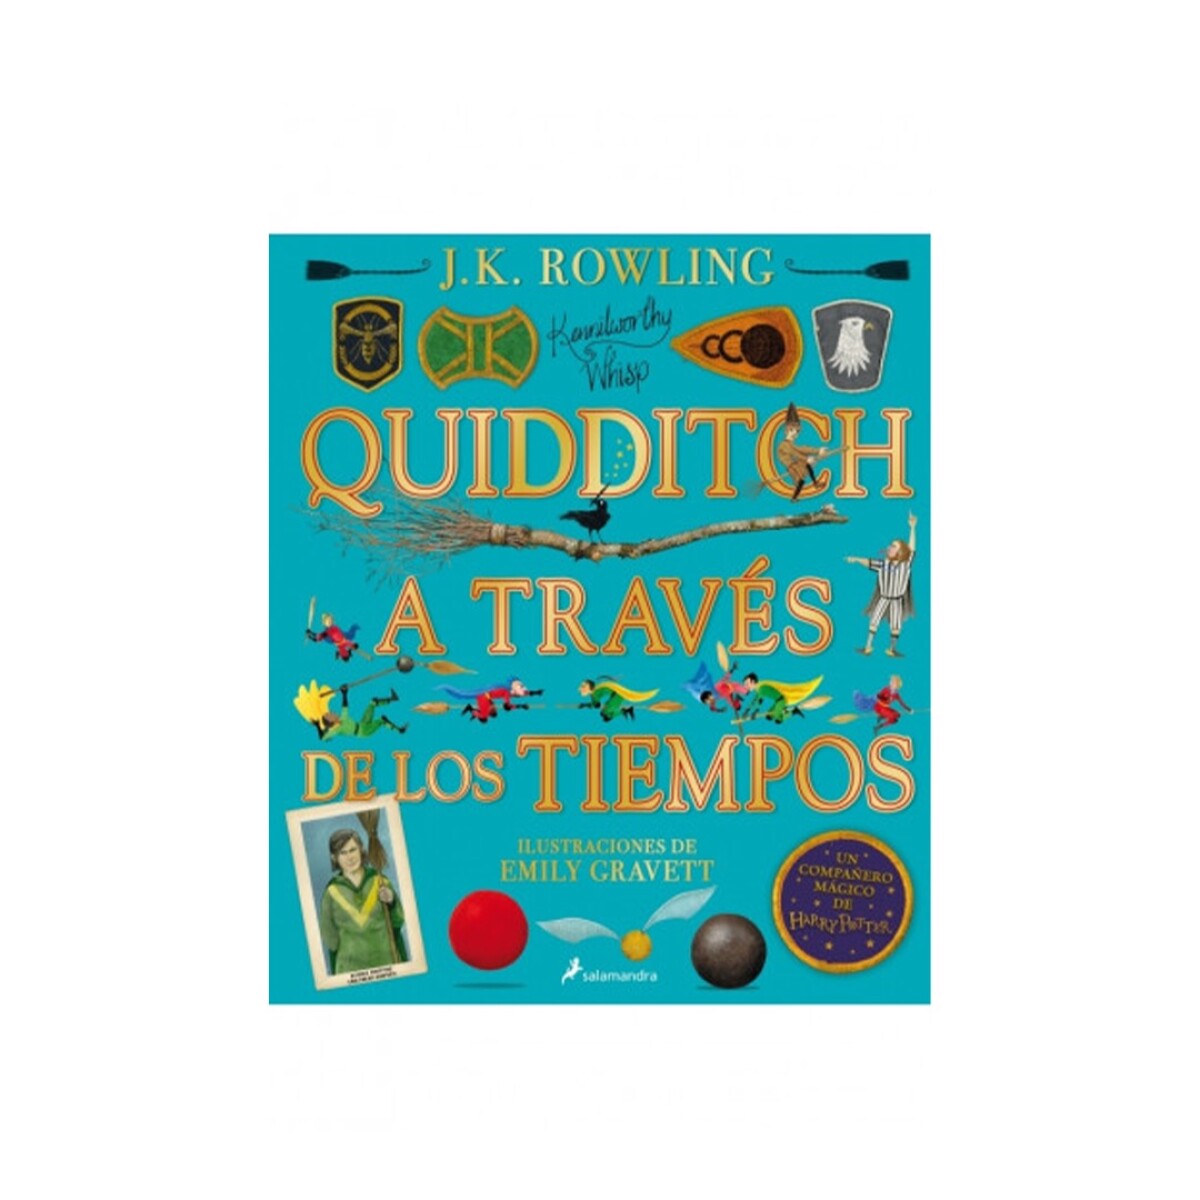 Quiddich a Traves de los Tiempos Colección Harry Potter - 001 